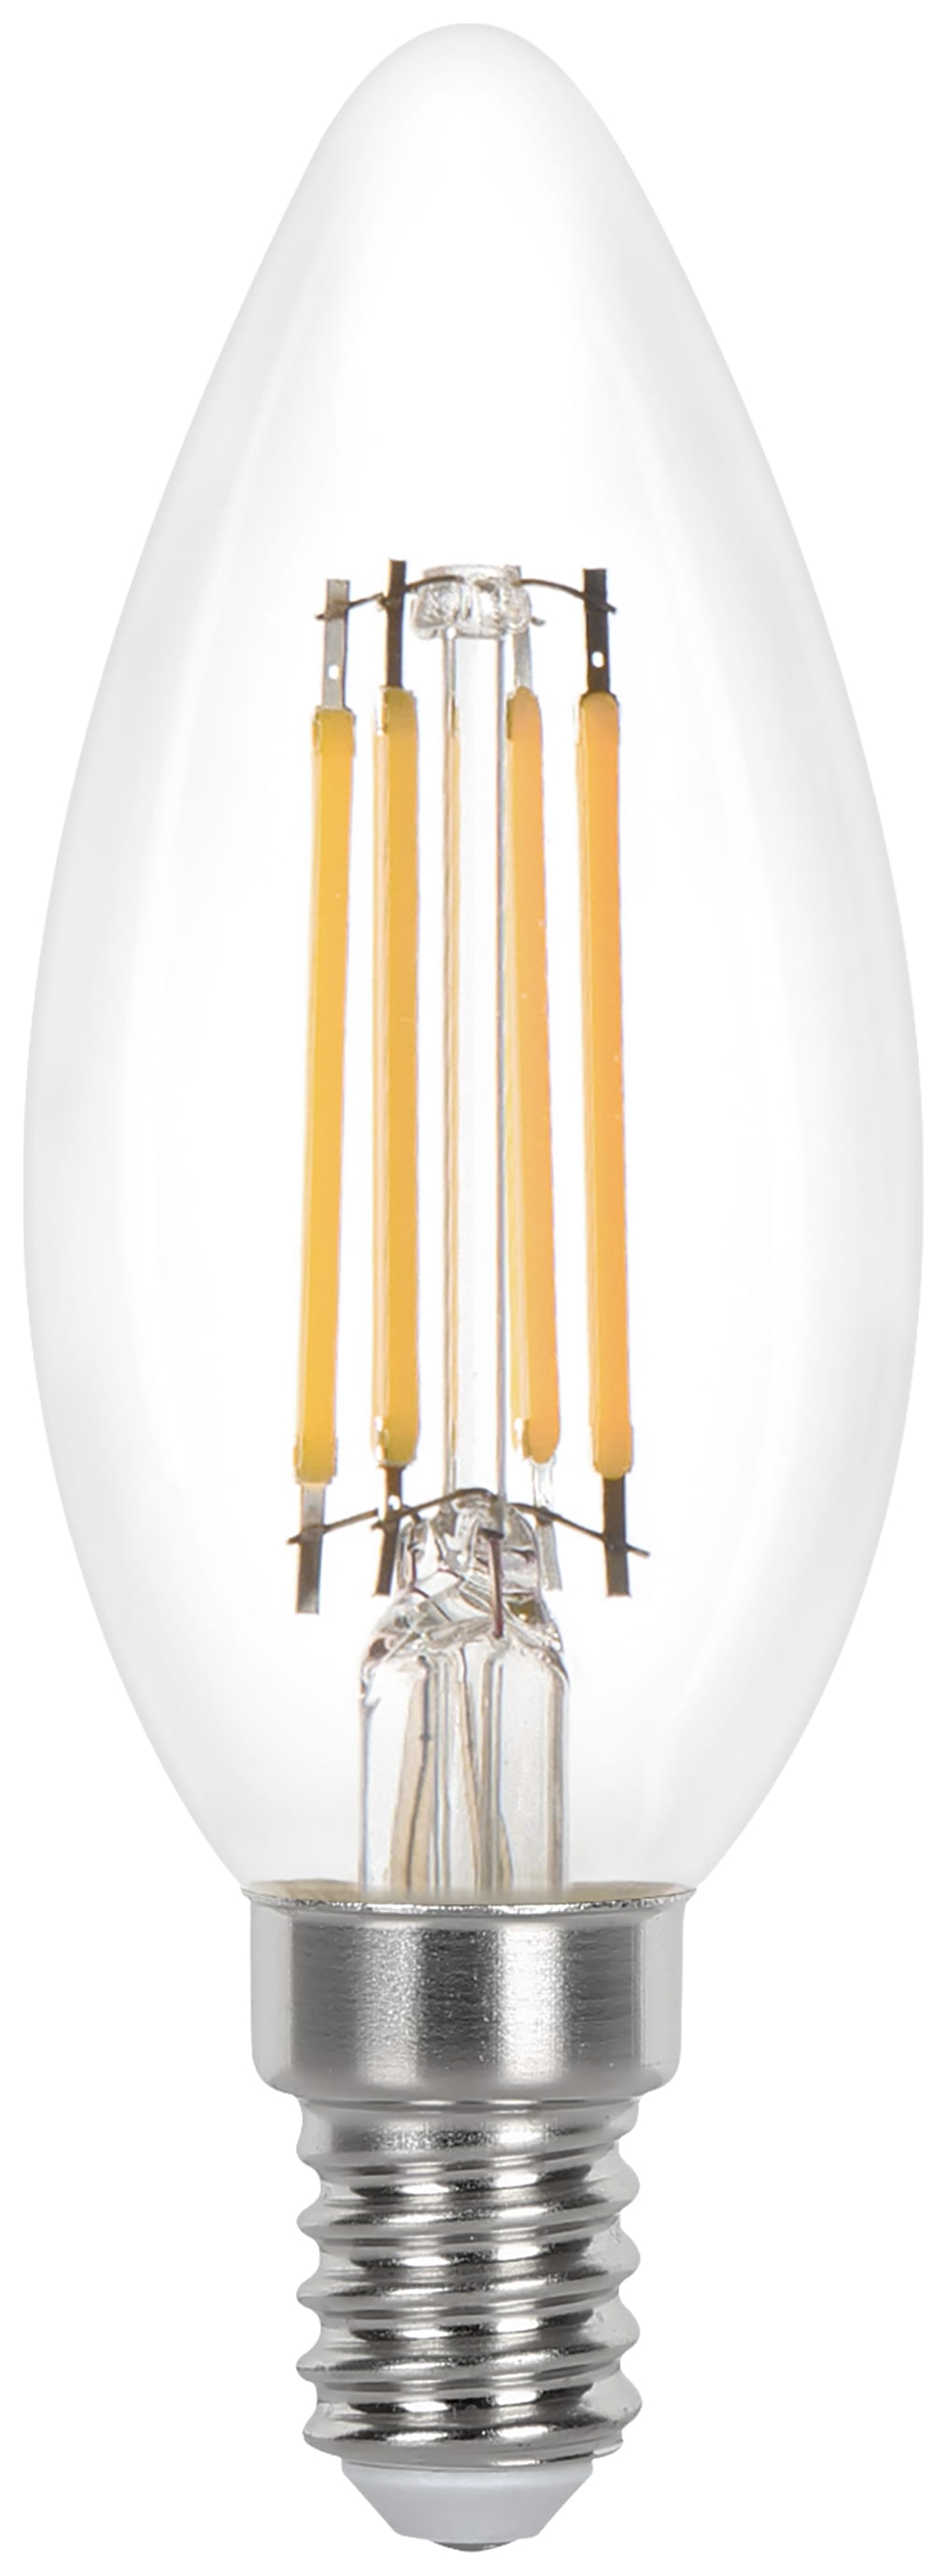 Wickes Non-Dimmable Filament E14 Candle 3.4W Warm White